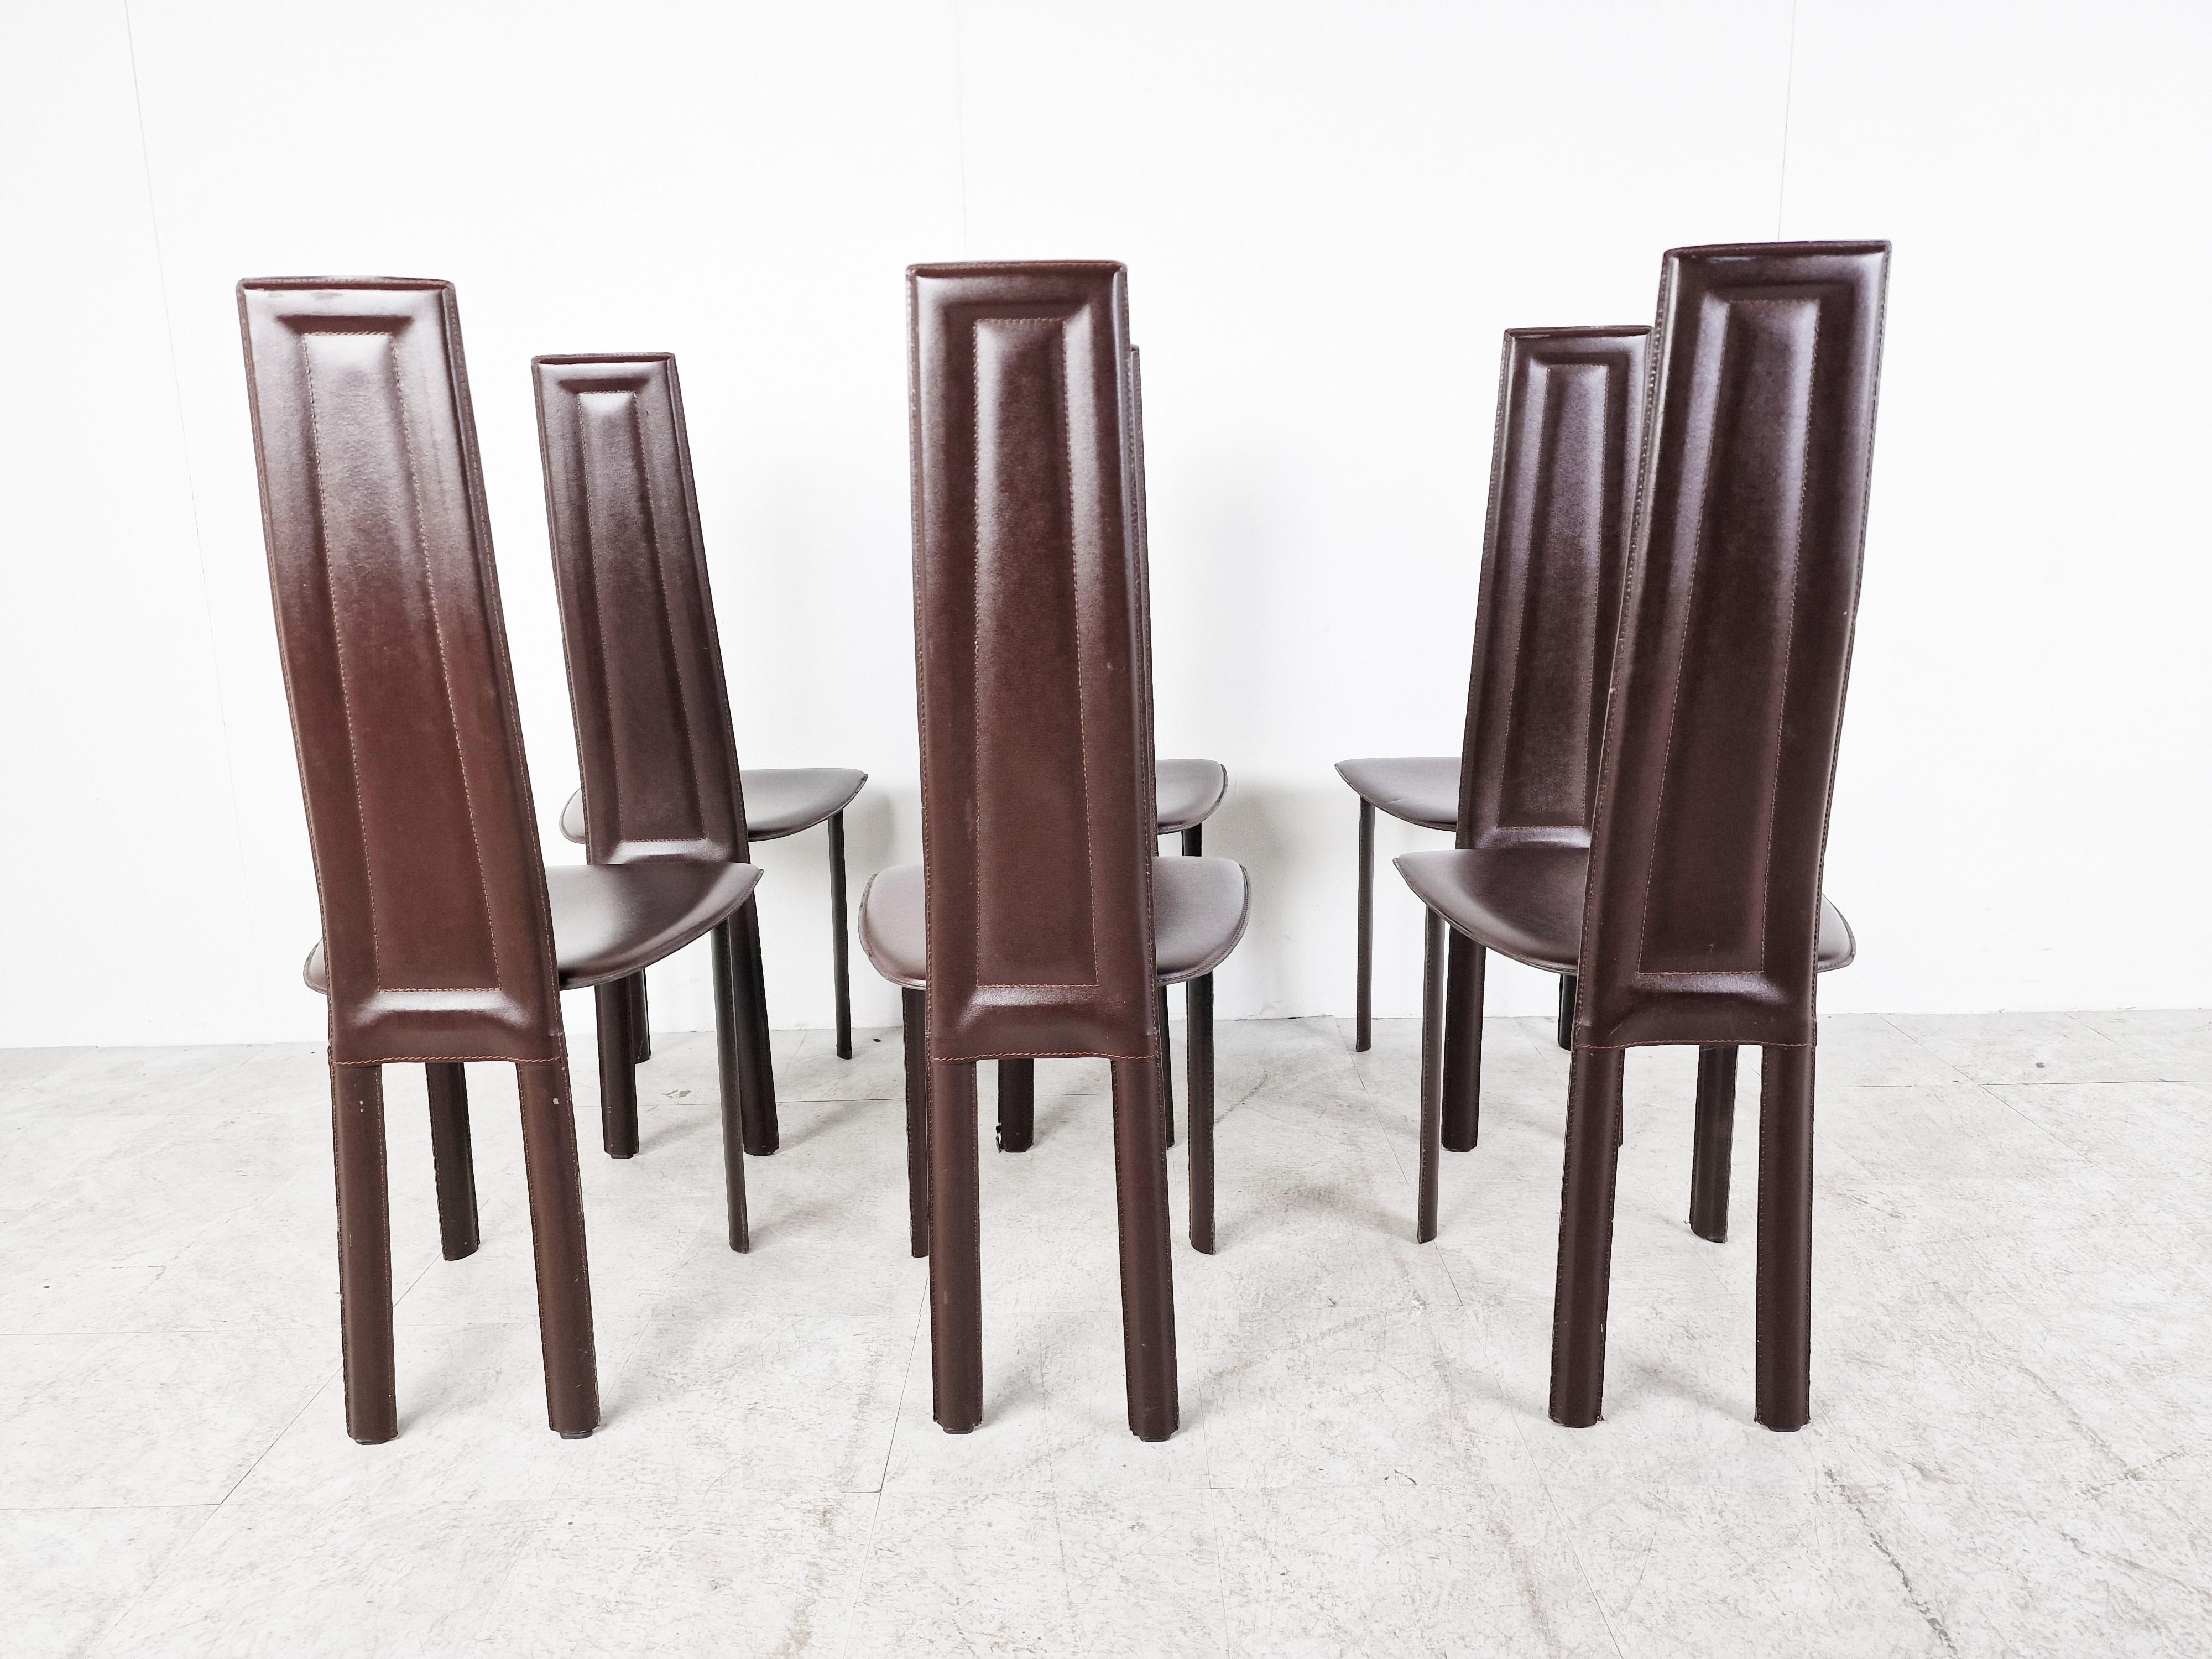 Satz von 6 dunkelbraunen italienischen Lederstühlen mit hoher Rückenlehne.

schönes, schlankes und zeitloses Design.

Die Stühle sind in gutem Zustand mit minimalen Gebrauchsspuren.

1980er Jahre - Italien

Abmessungen
höhe: